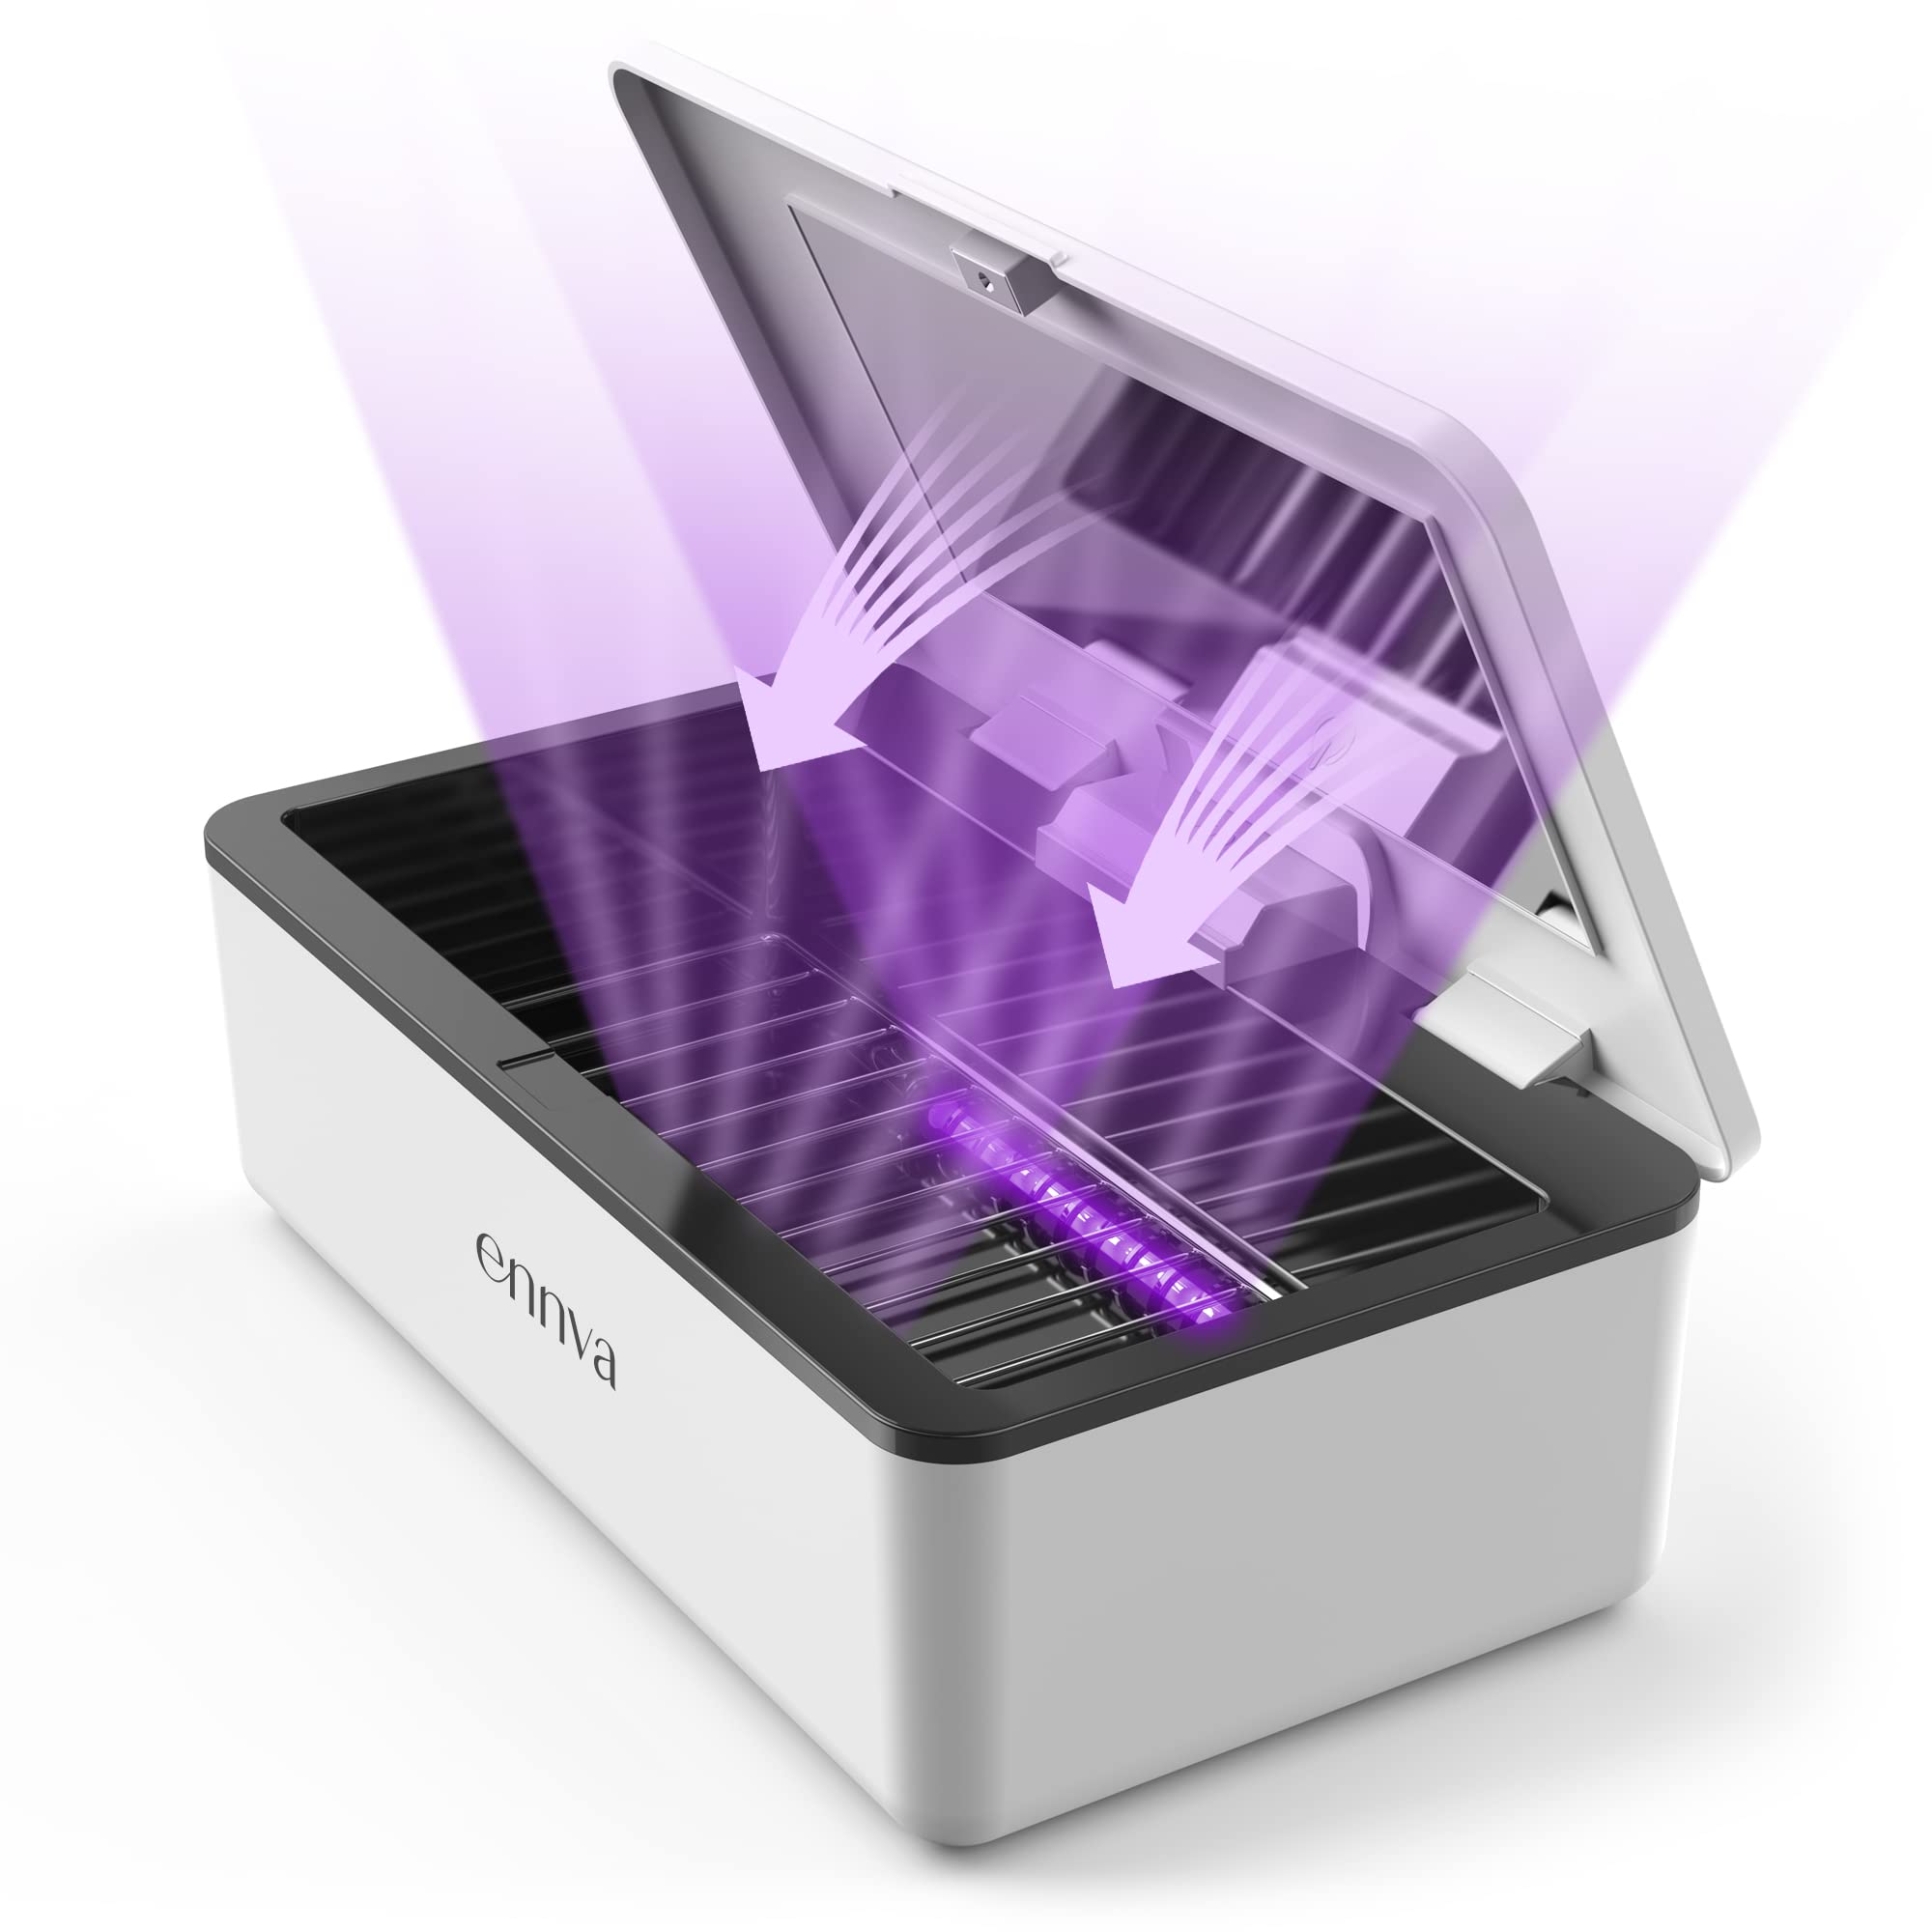 UV light Sanitizer Box – IGlamourLash